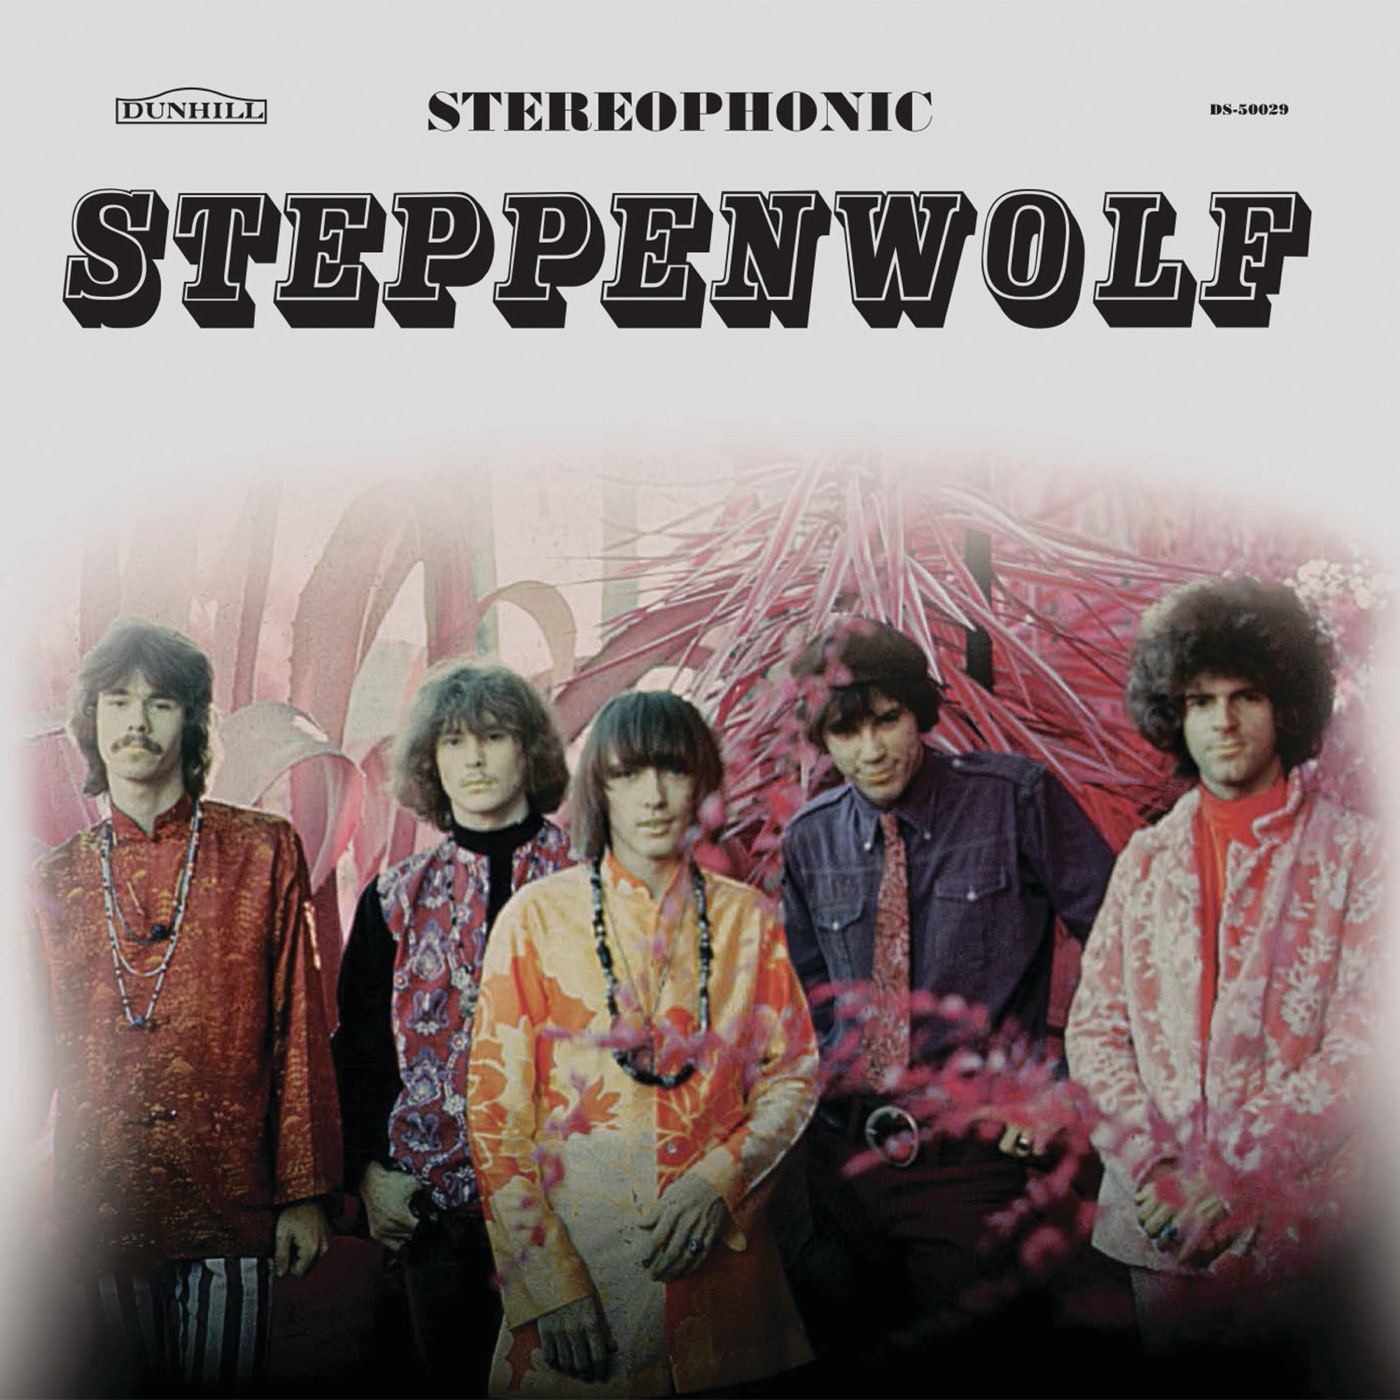 Steppenwolf by Steppenwolf